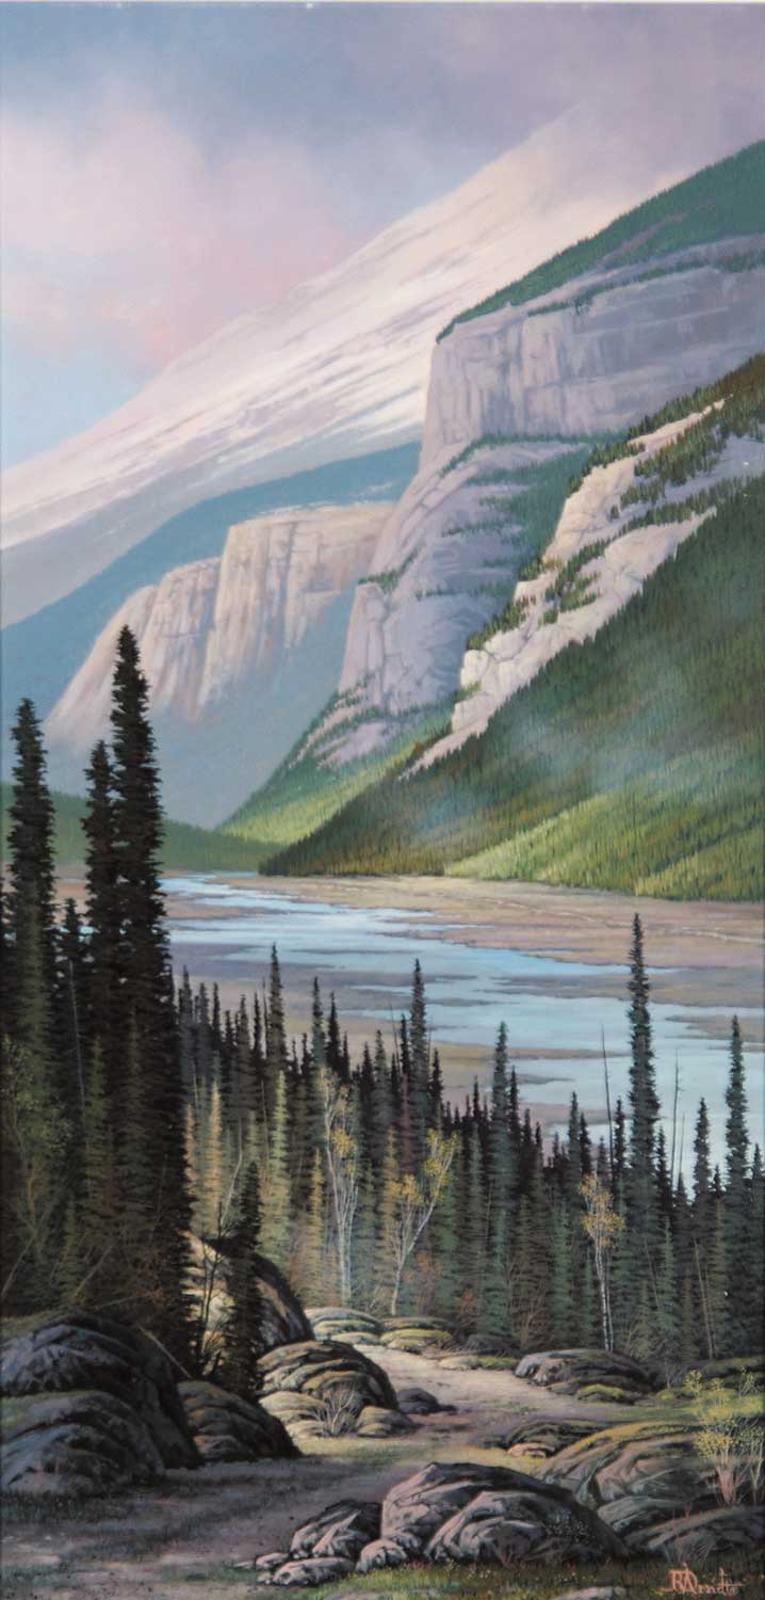 Roger D. Arndt (1959) - Along the Athabasca